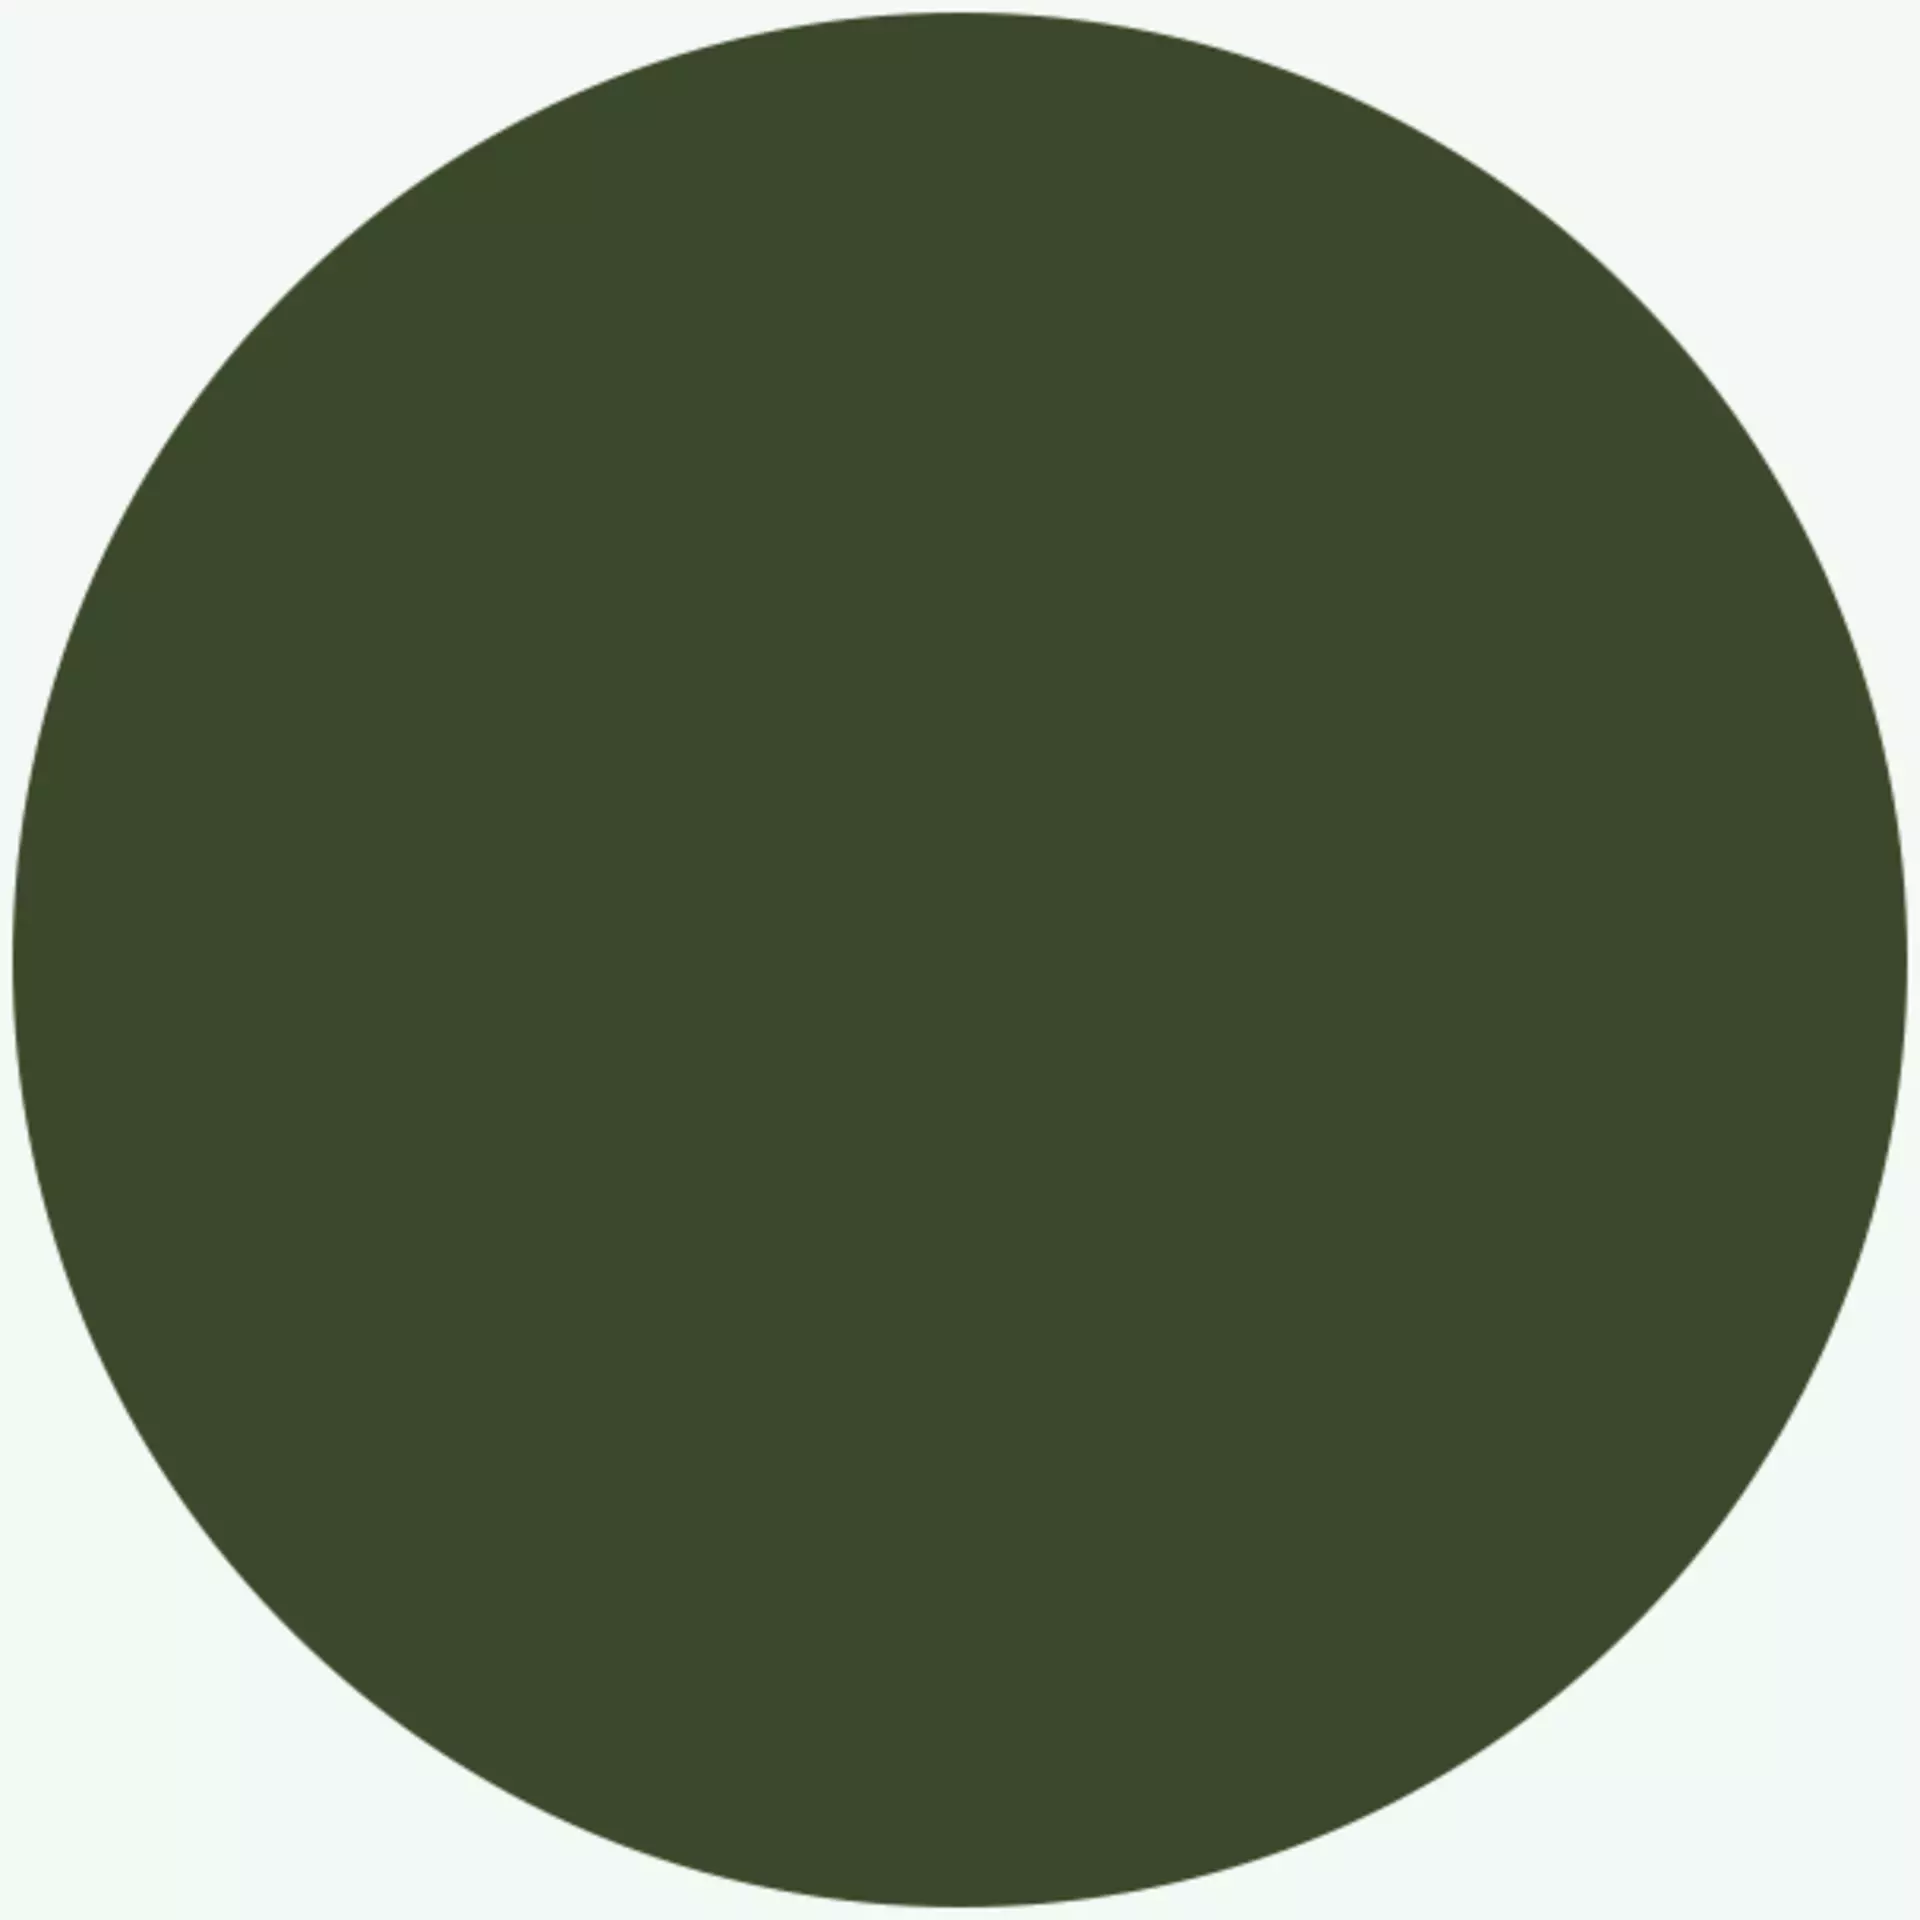 Olivgrün - der erdige Farbton aus der Royal Green Farbpalette